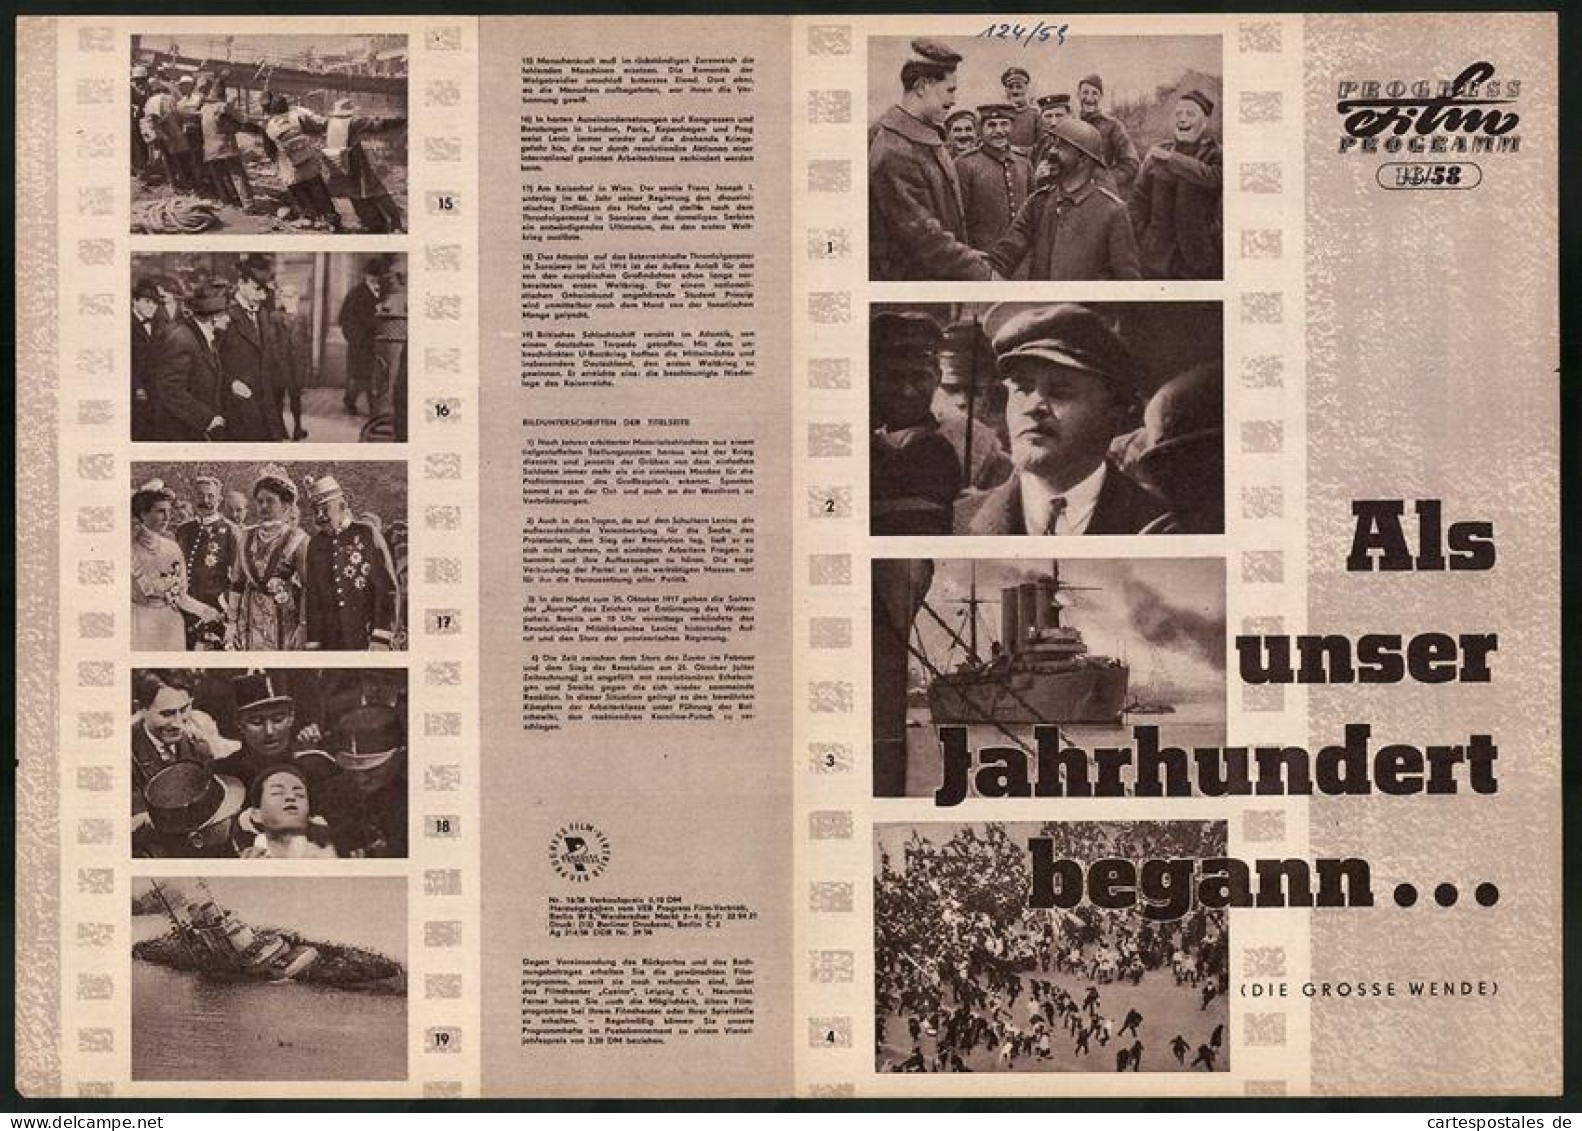 Filmprogramm PFP Nr. 16 /58, Als Unser Jahrhundert Begann..., Dokumentarfilm, Regie: Sergei Gurow  - Zeitschriften